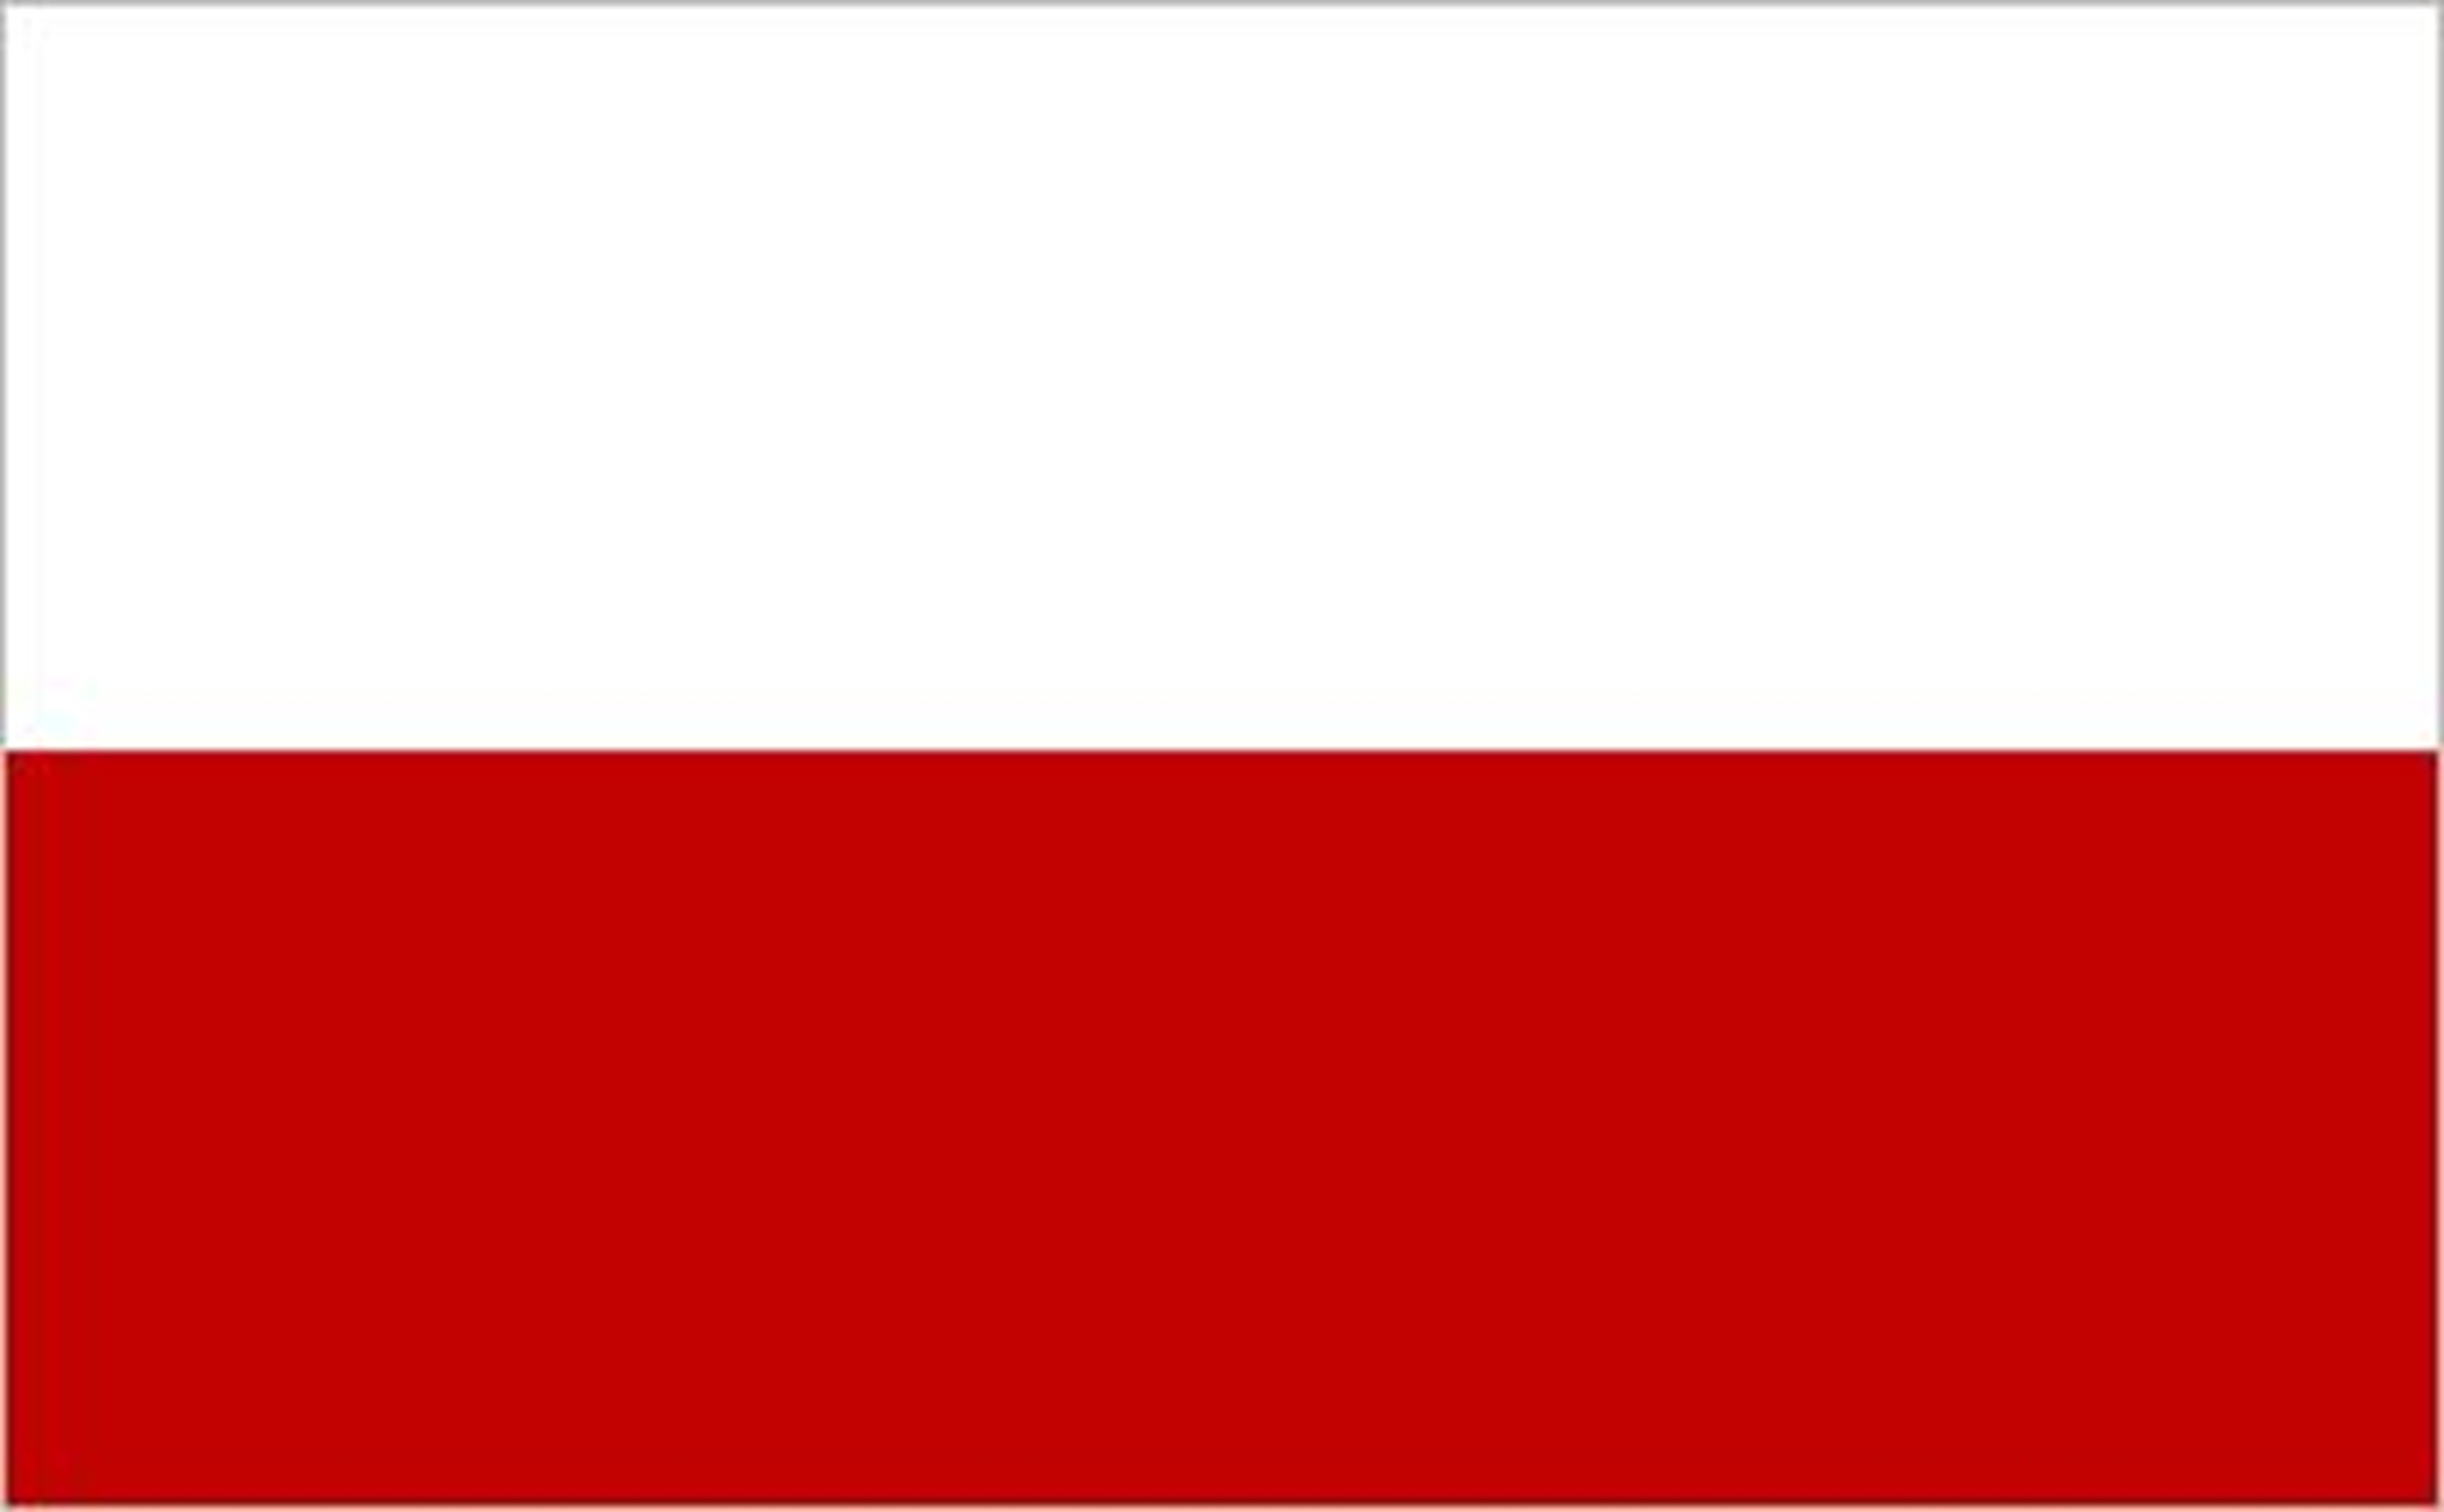 Poland| Poland